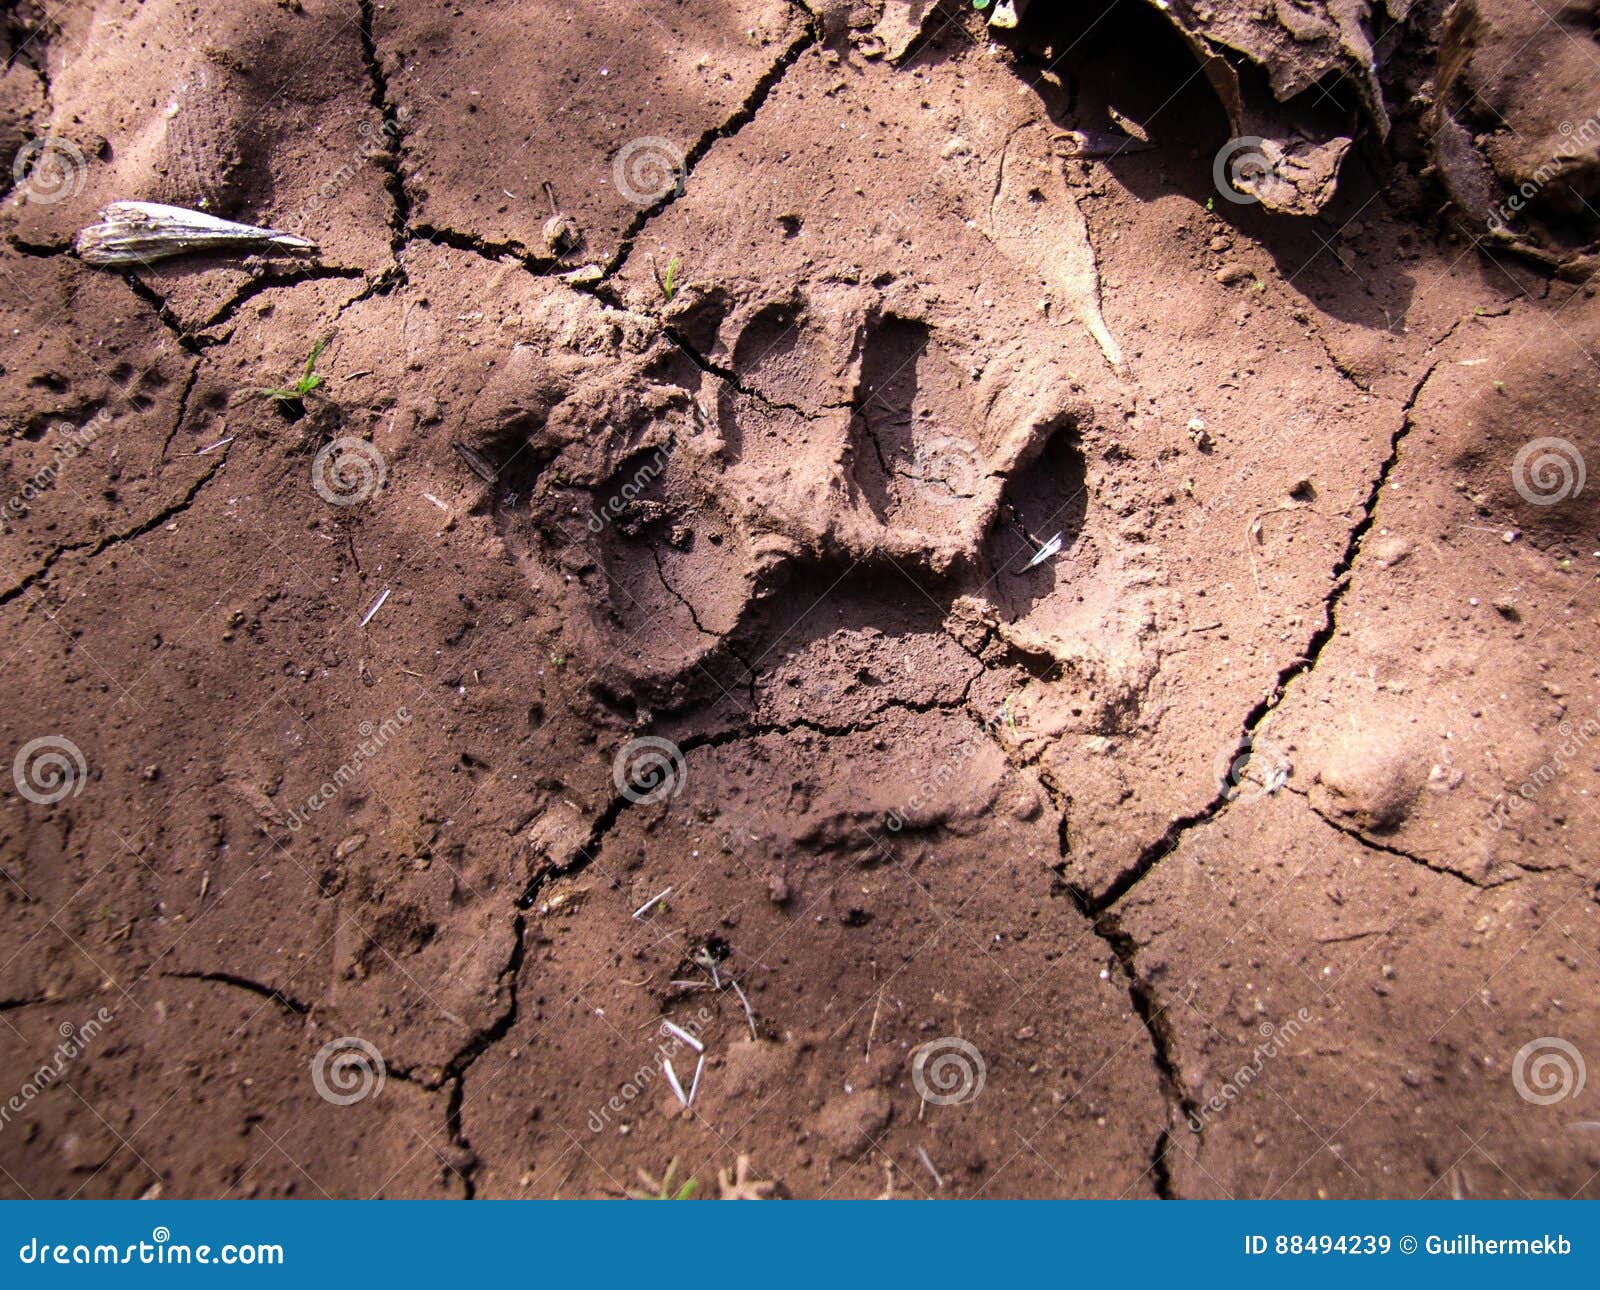 puma footprint